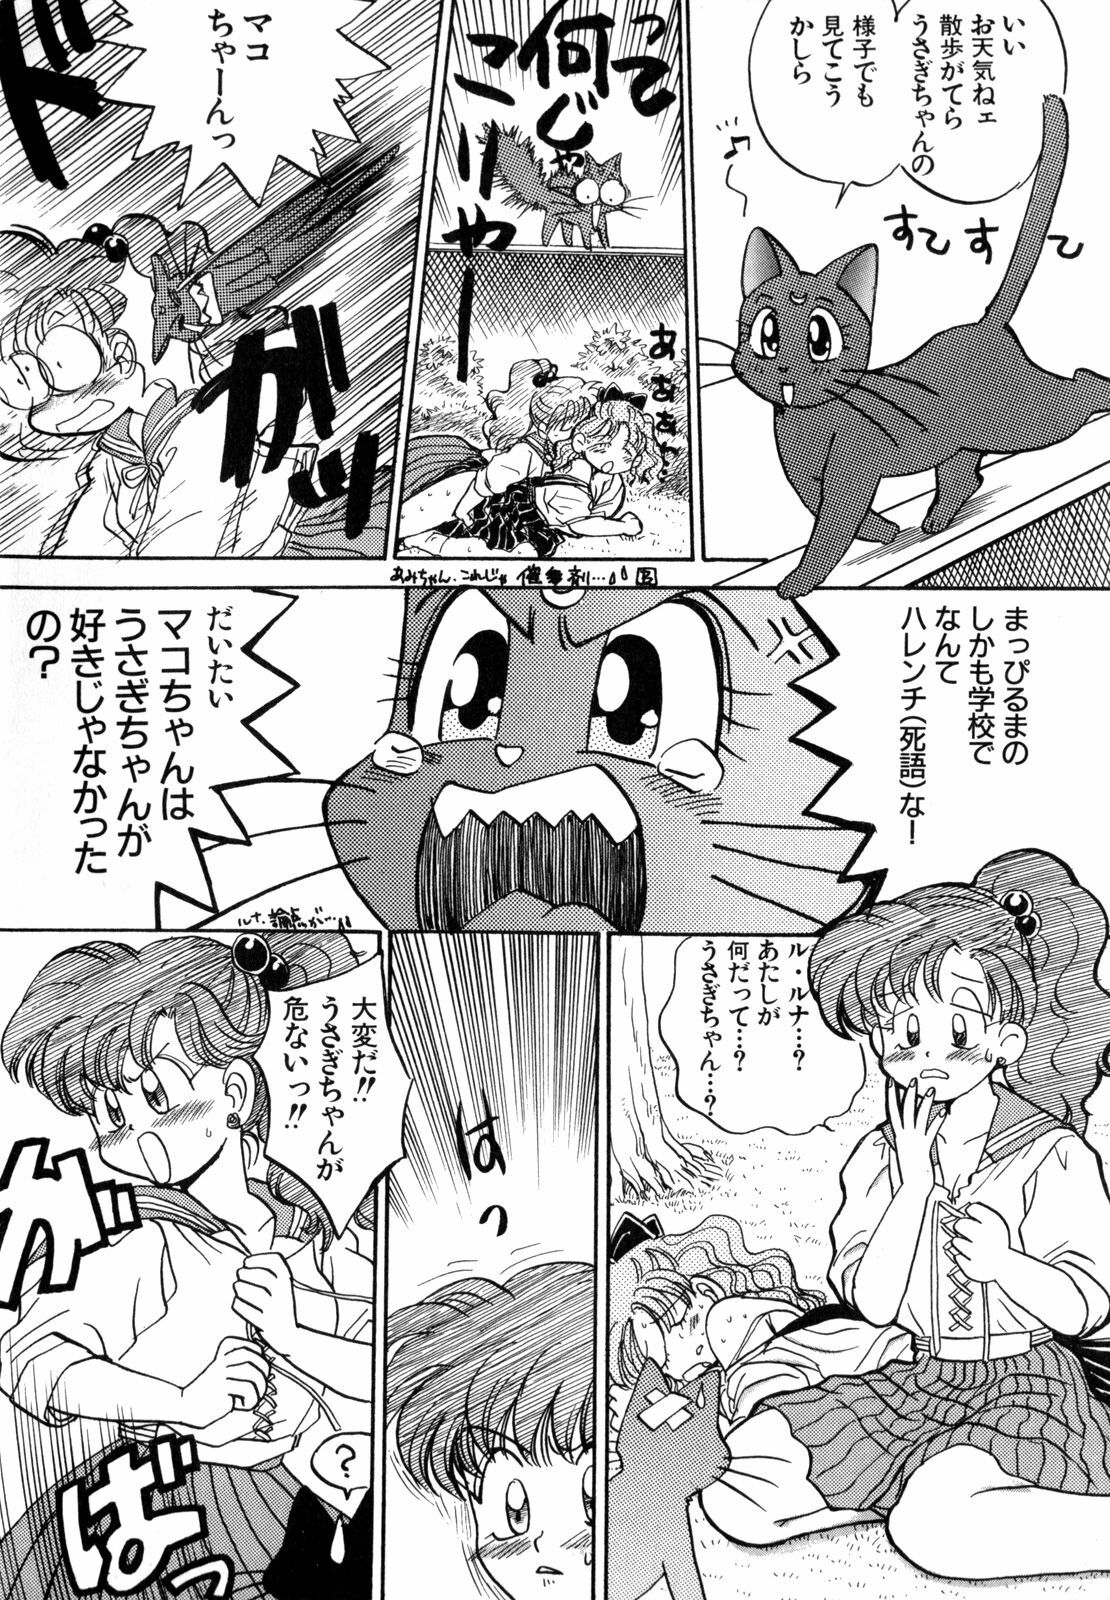 [Anthology] Lunatic Party 4 (Bishoujo Senshi Sailor Moon) page 41 full